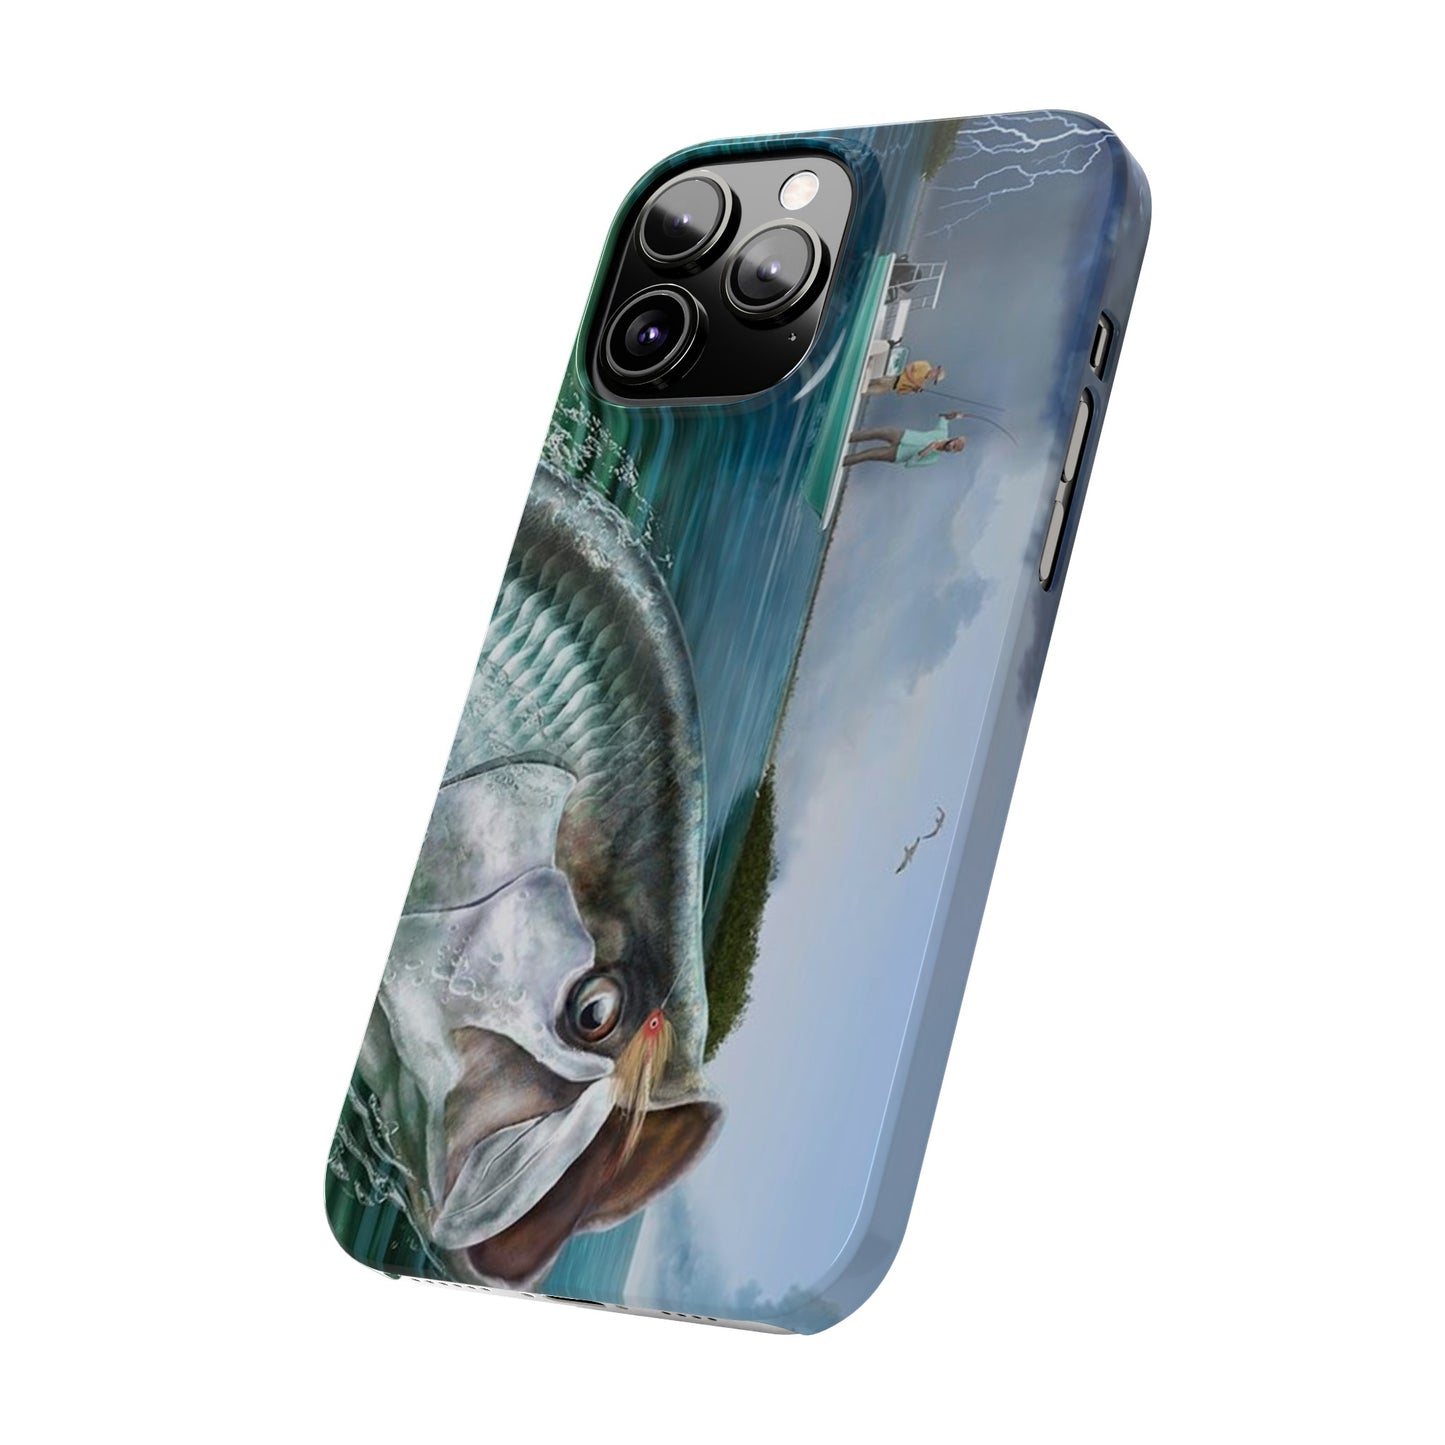 Tarpon Phone Case, Fishing Phone Case